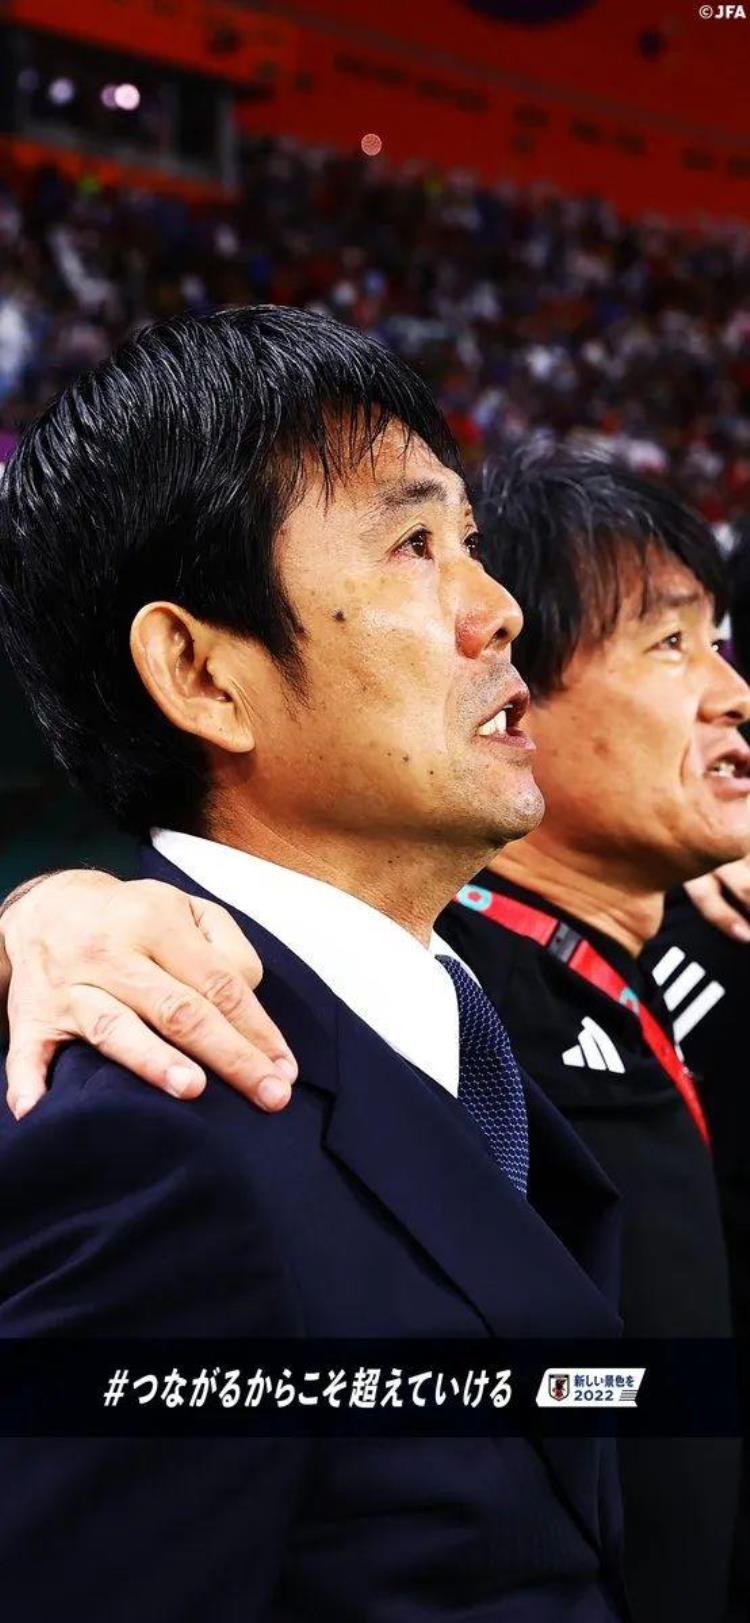 日本足球的崛起之路「日本足球的目标不再是追赶了」